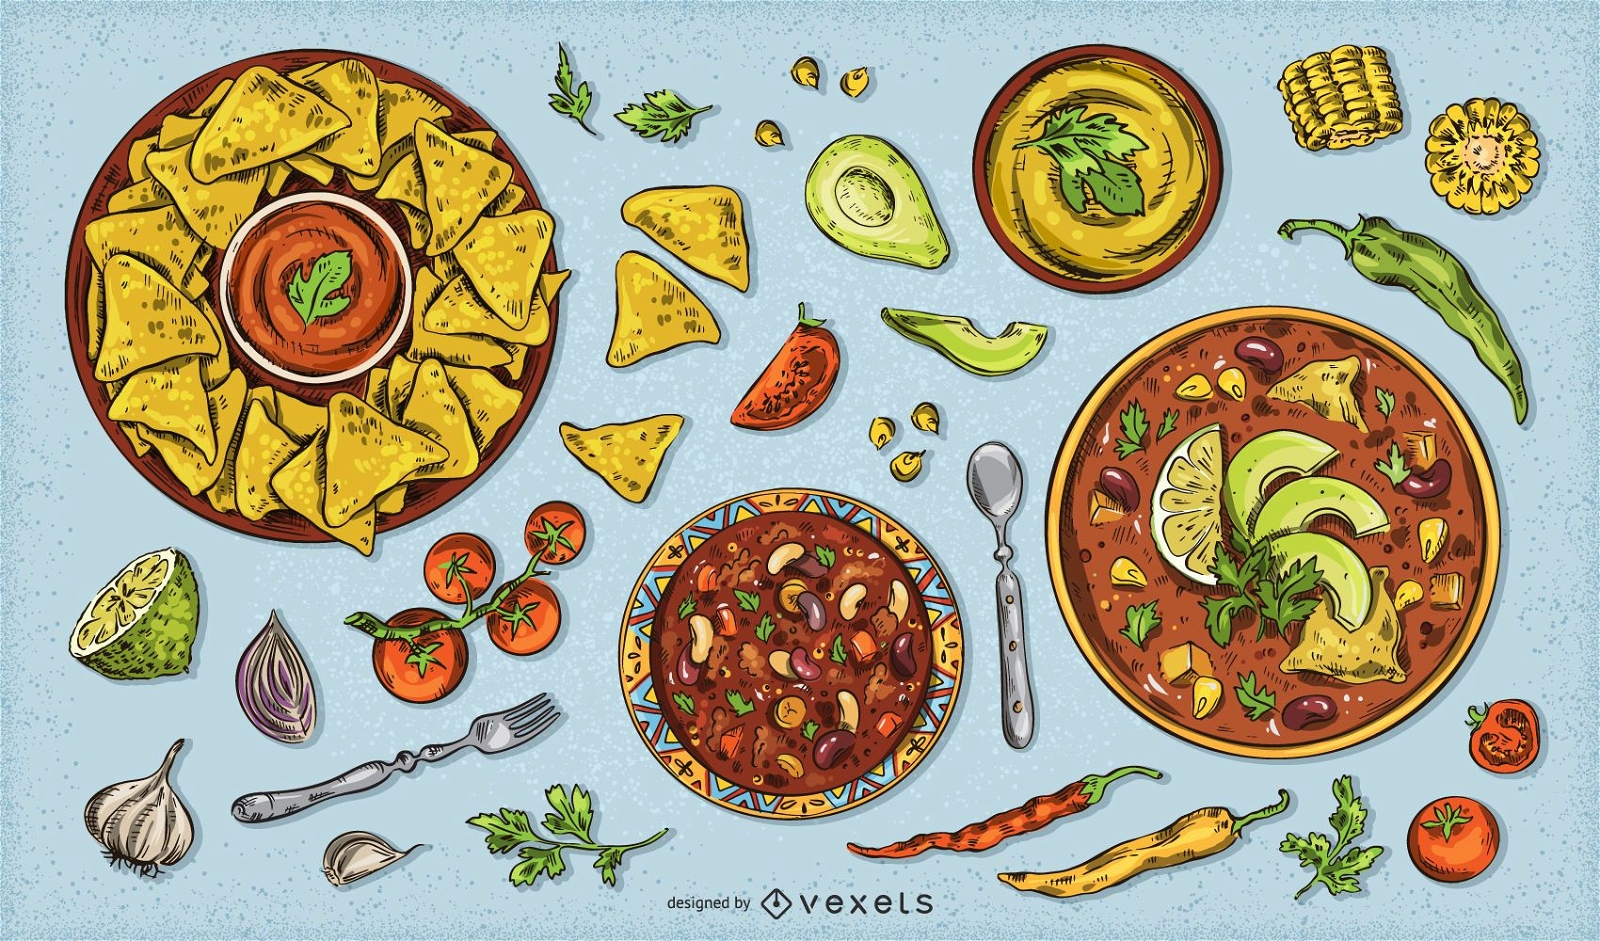 5 De Mayo mexikanisches Food Design Pack